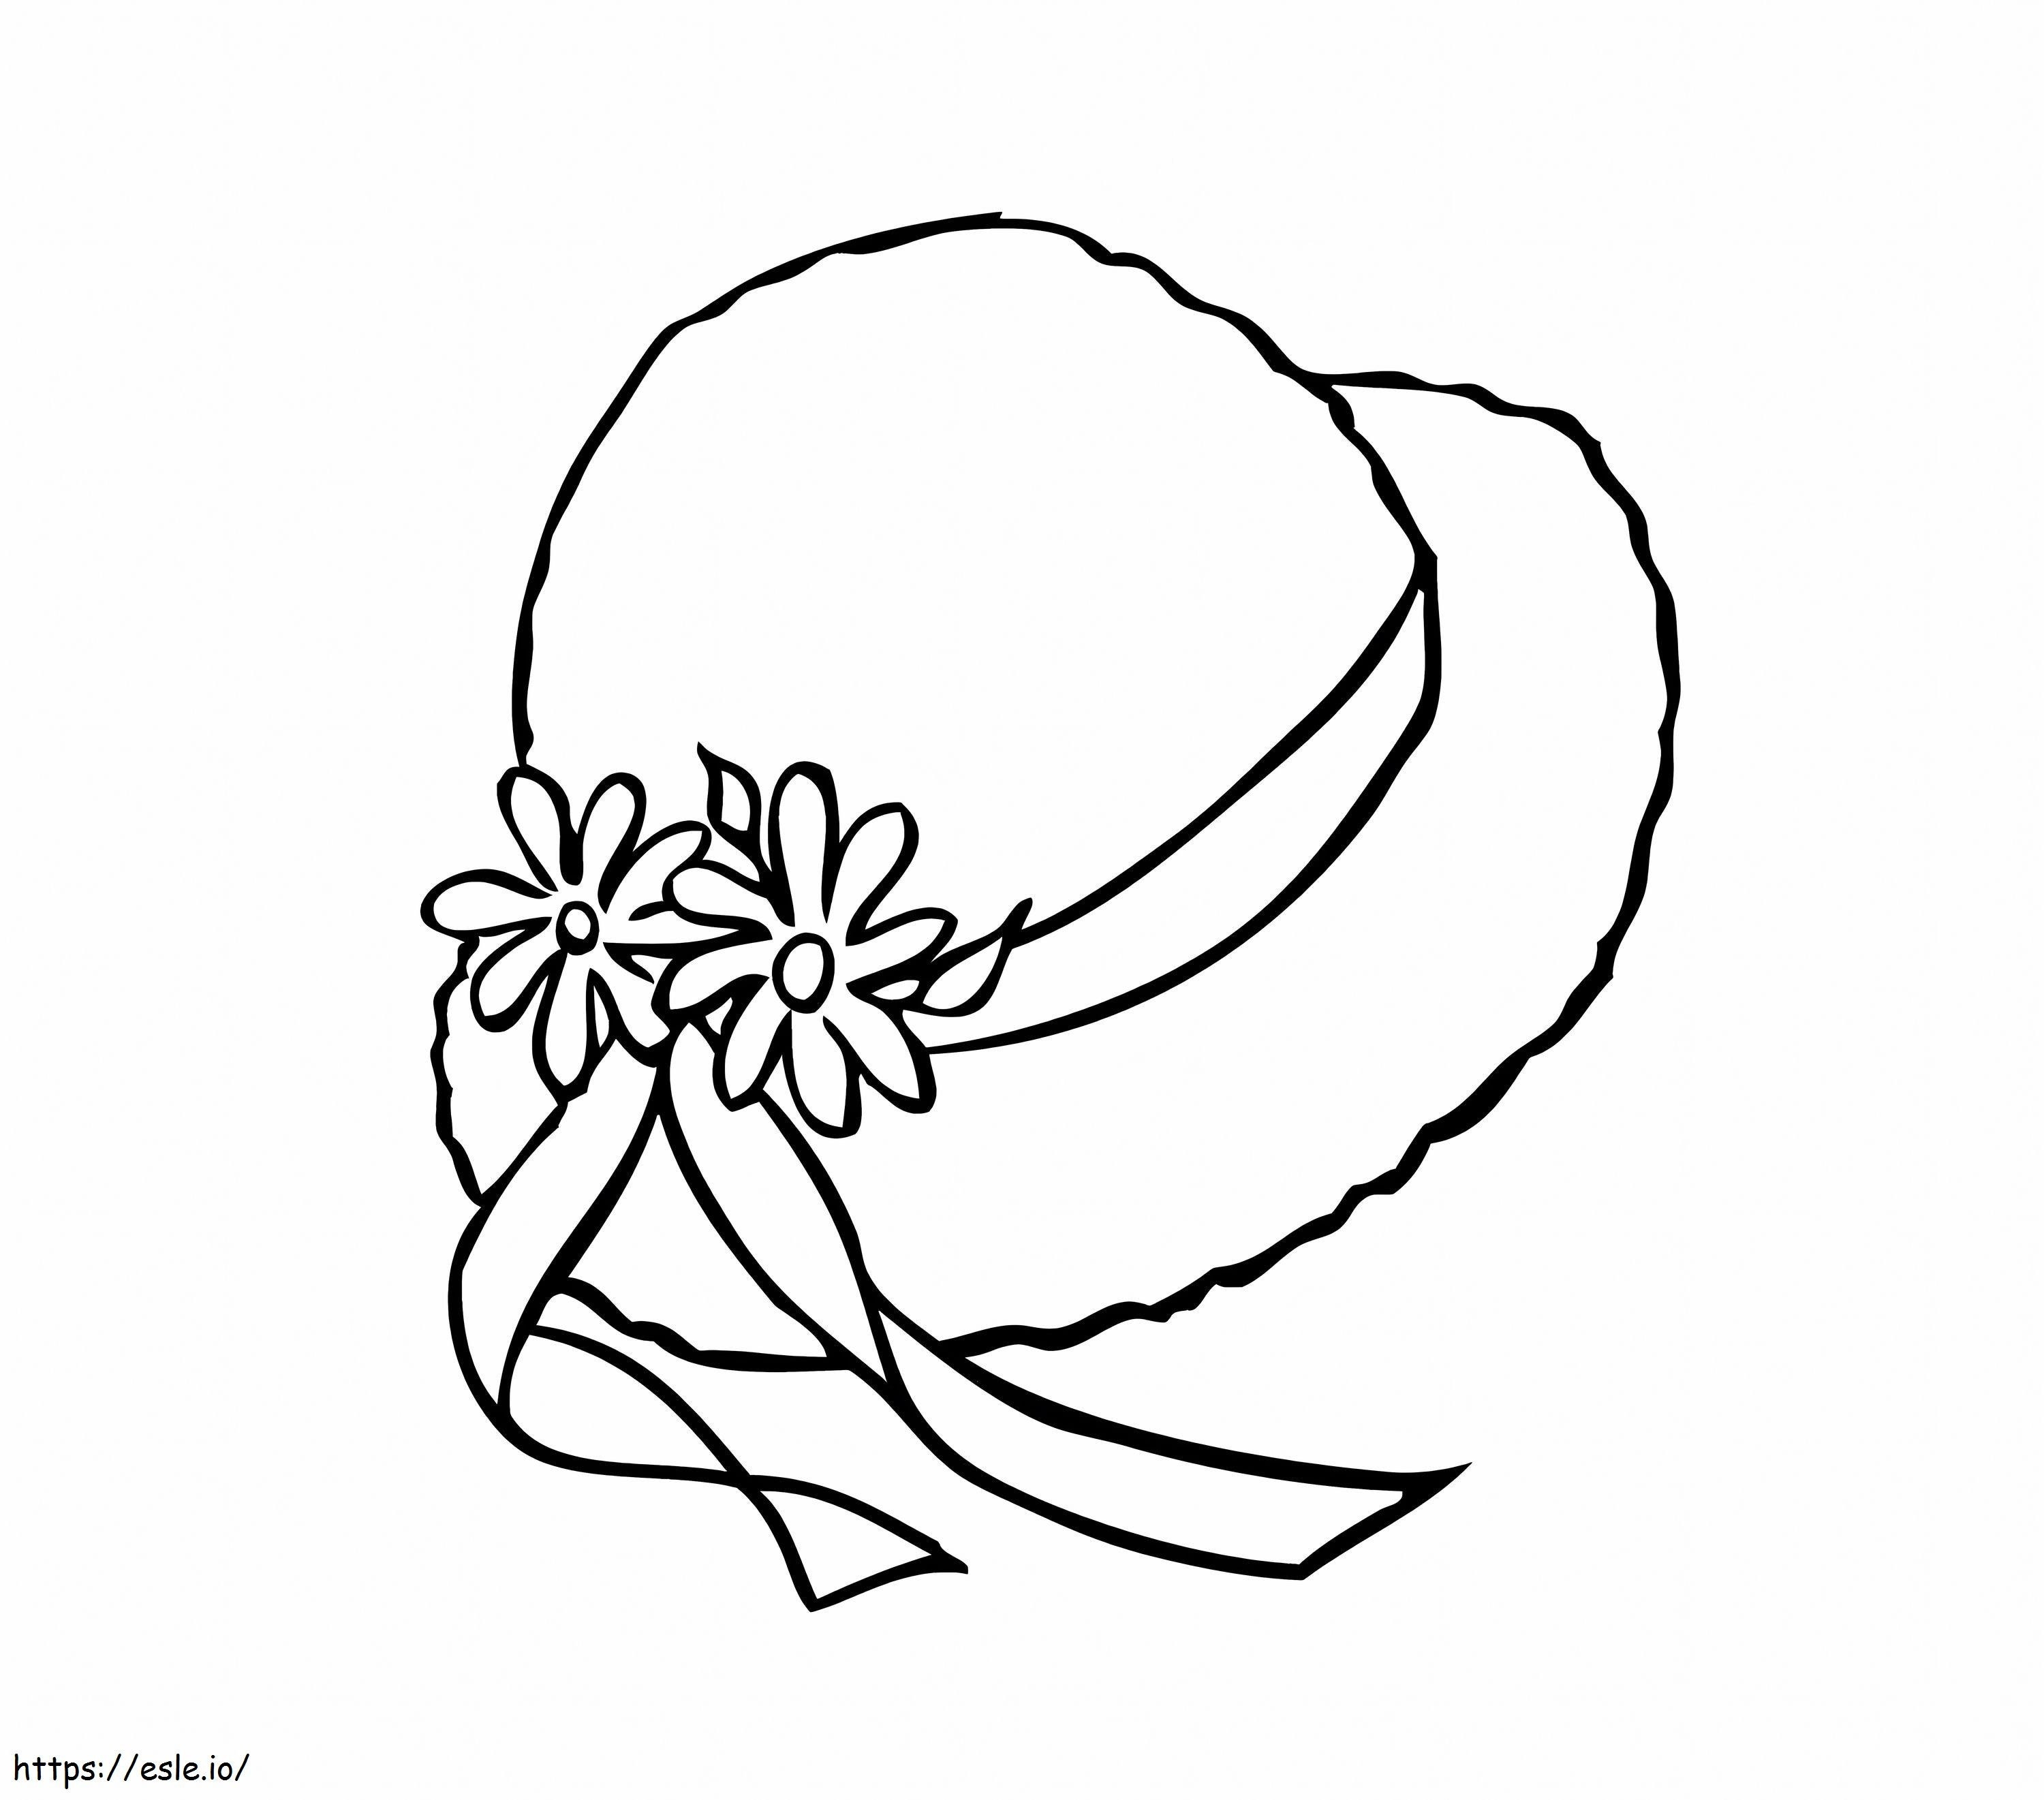 Hut mit zwei Blumen ausmalbilder